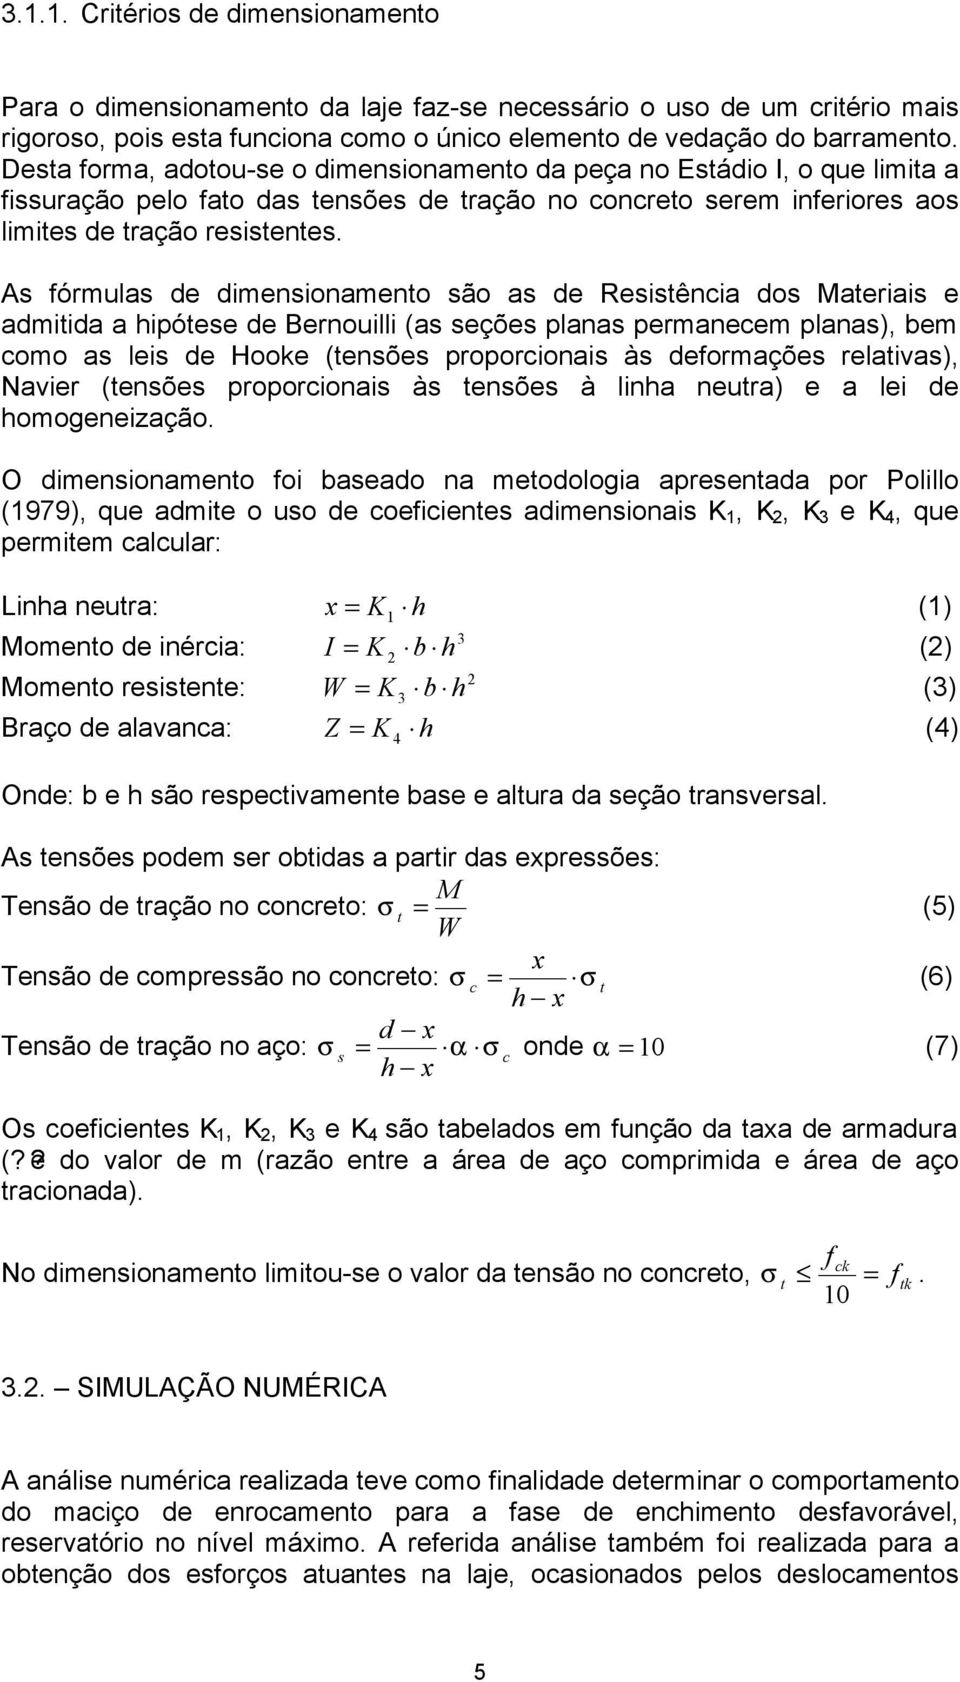 As fórmulas de dimensionamento são as de Resistência dos Materiais e admitida a hipótese de Bernouilli (as seções planas permanecem planas), bem como as leis de Hooke (tensões proporcionais às